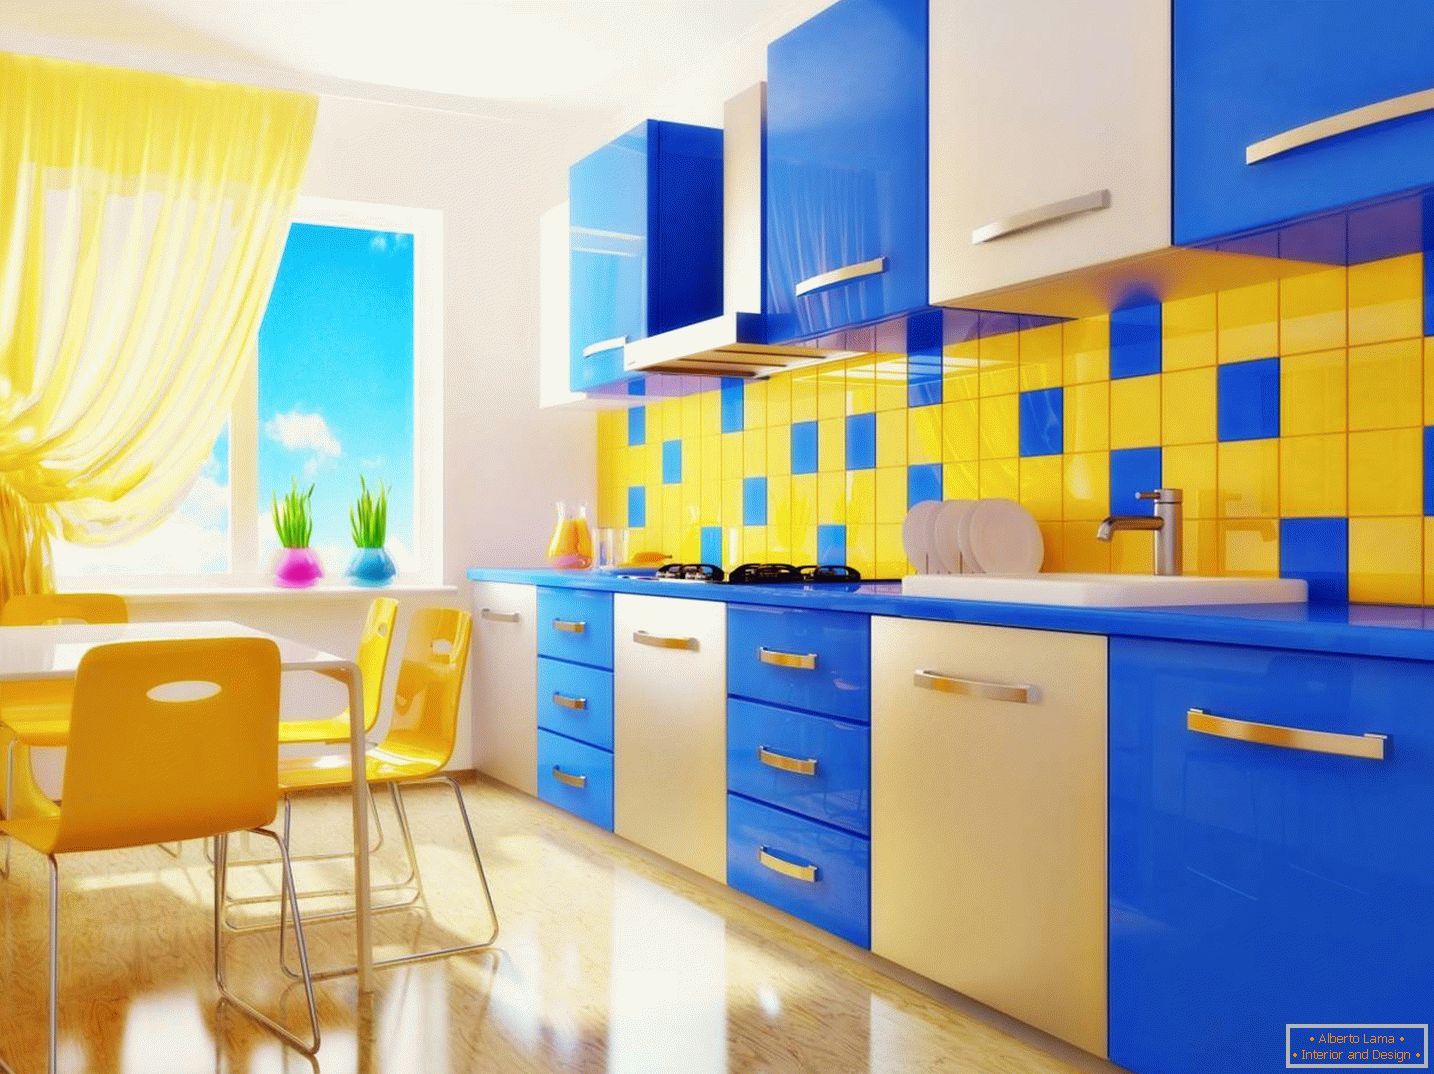 Plava i žuta kuhinja